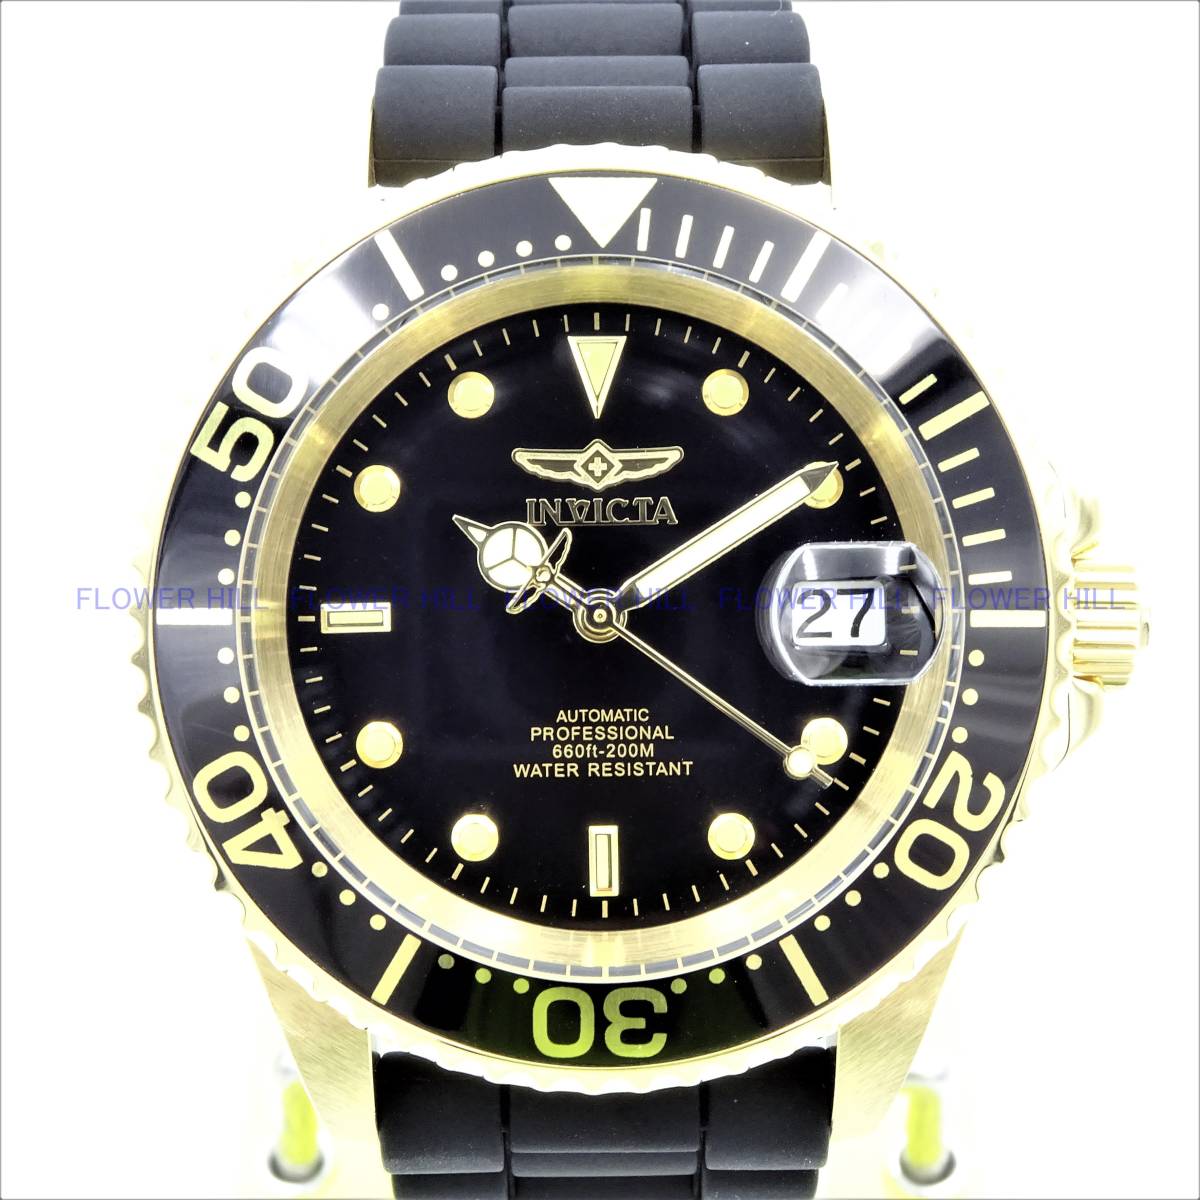 [ новый товар * бесплатная доставка ] in корзина для рыбы taINVICTA наручные часы мужской 23681 Pro дайвер PRO DIVER самозаводящиеся часы черный * Gold силикон частота 